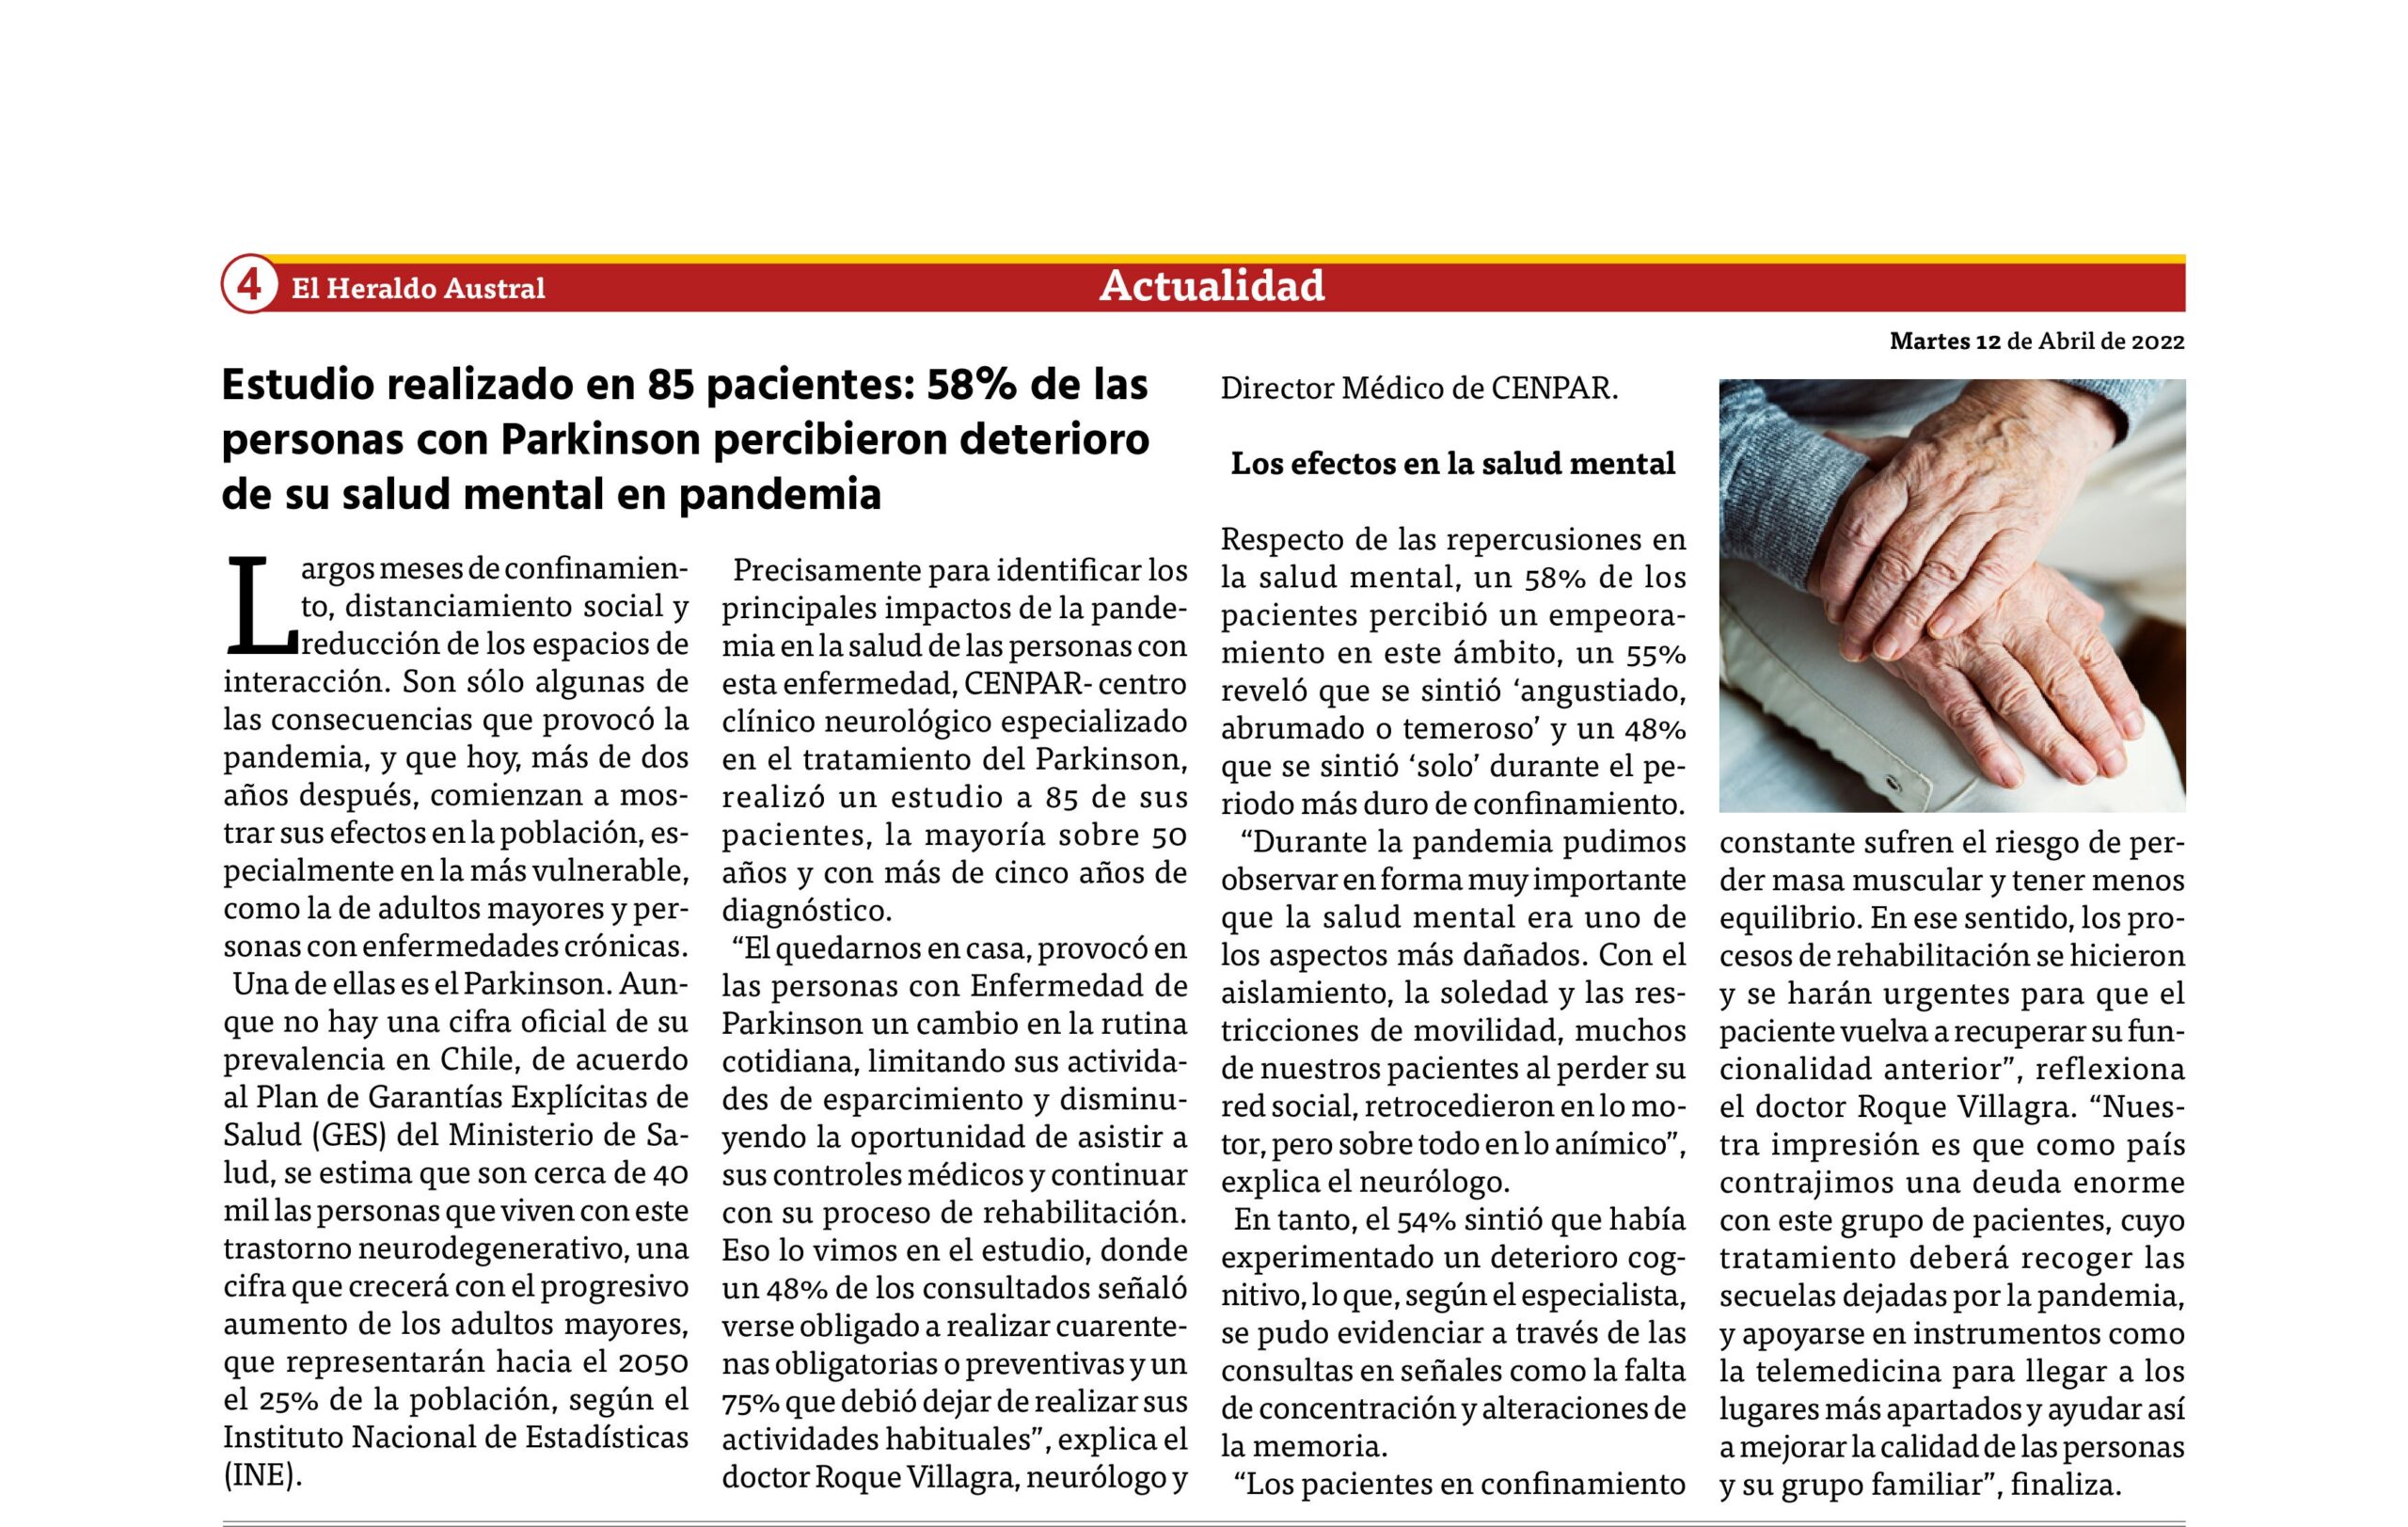 Estudio realizado en 85 pacientes: 58% de las personas con Parkinson percibieron deterioro de su salud mental en pandemia